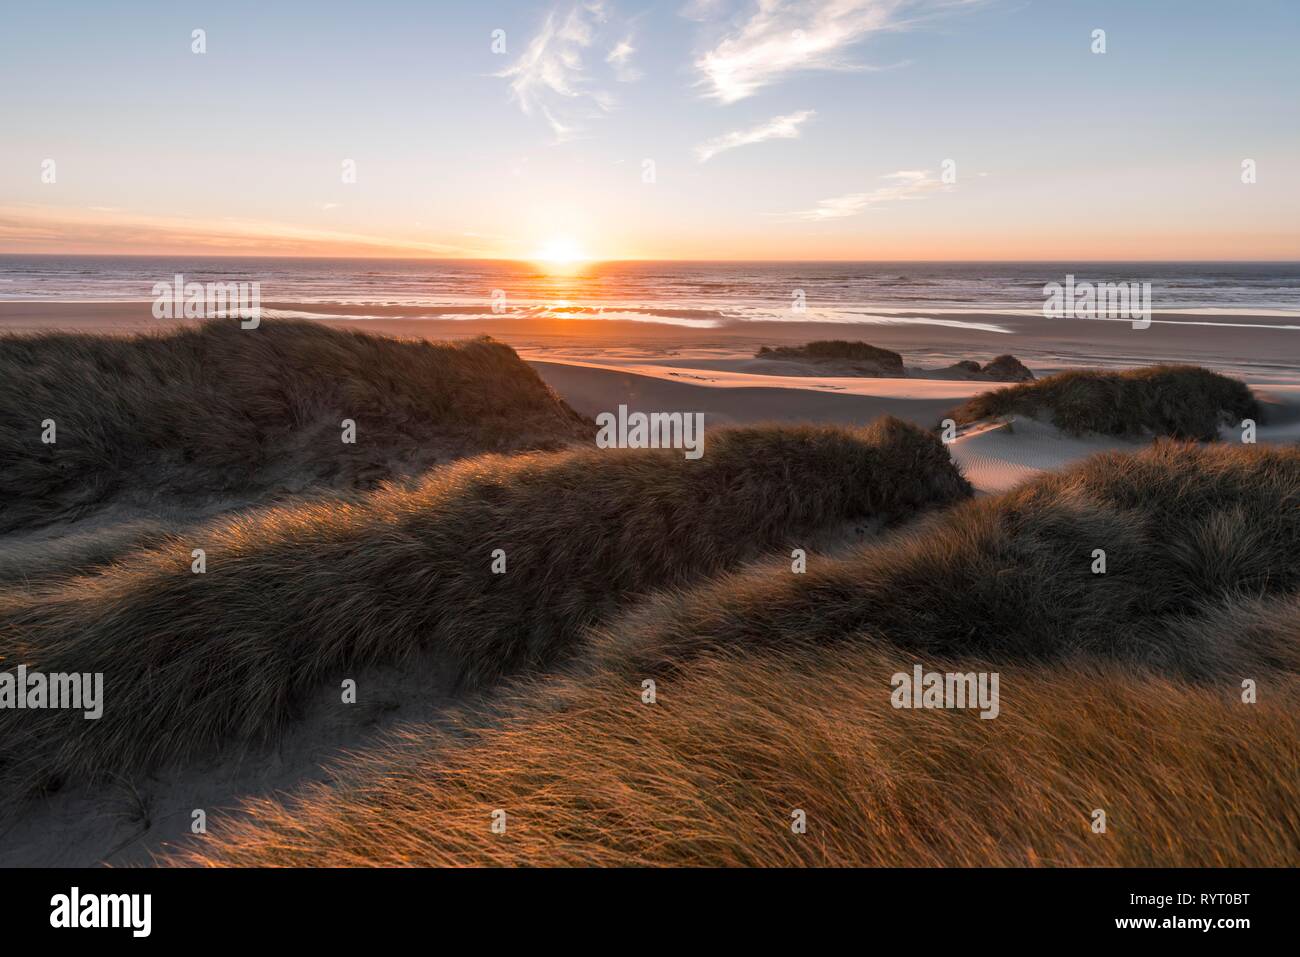 Puesta de sol, playa con arena y dunas de arena en la costa, aliso Dune, Baker Beach, viewpoint Holman Vista, Oregón, EE.UU. Foto de stock